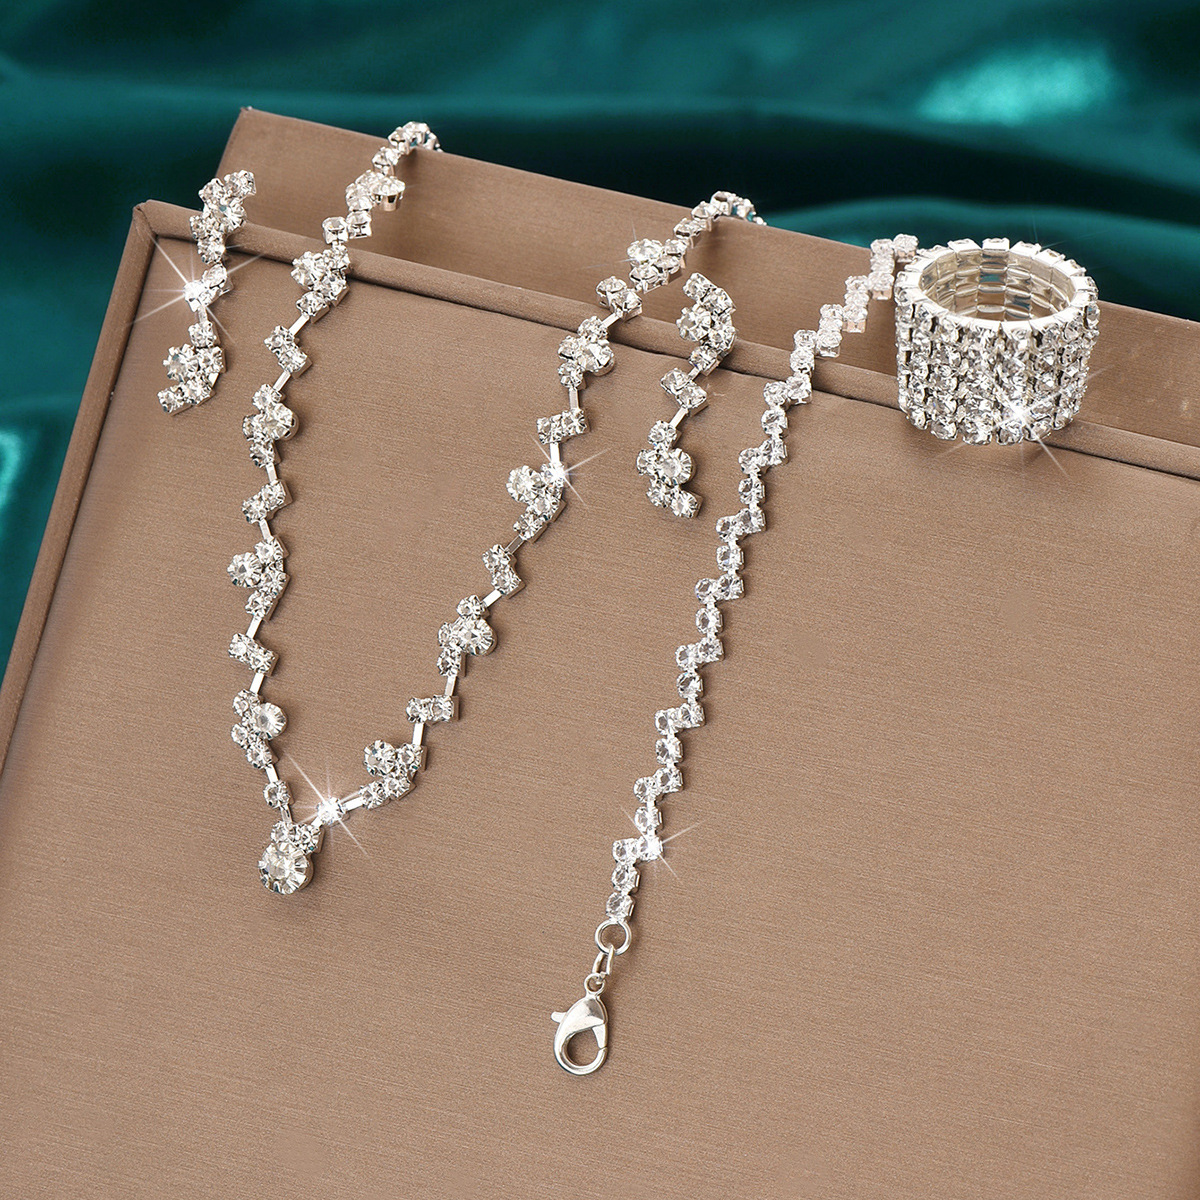 424785424-5 Silver necklace earrings bracelet ring set